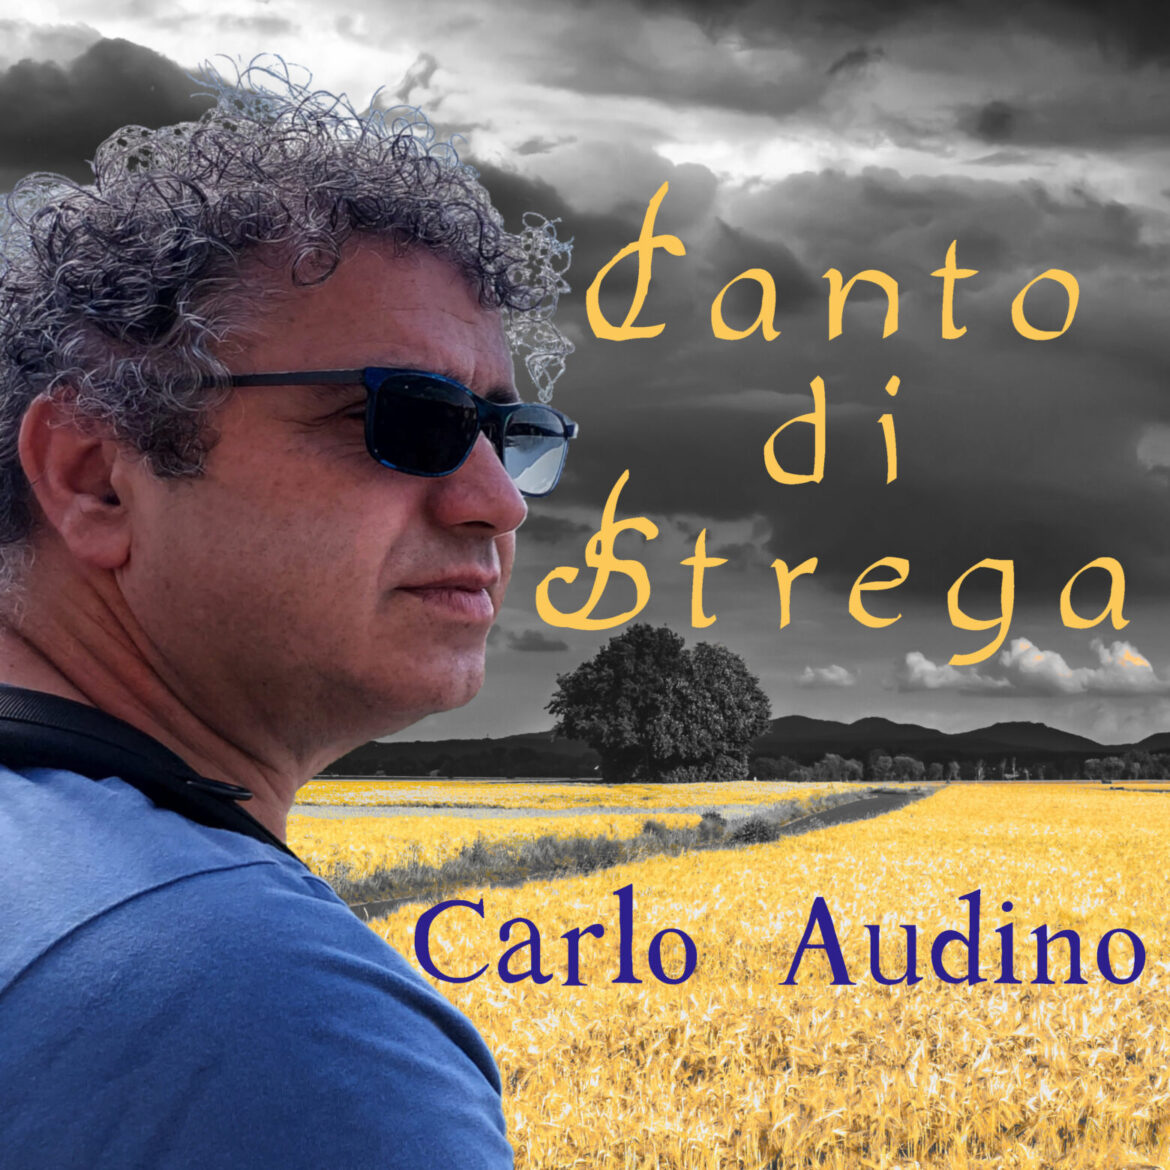 CARLO AUDINO: esce in radio il 1 ottobre il nuovo singolo “CANTO DI STREGA”